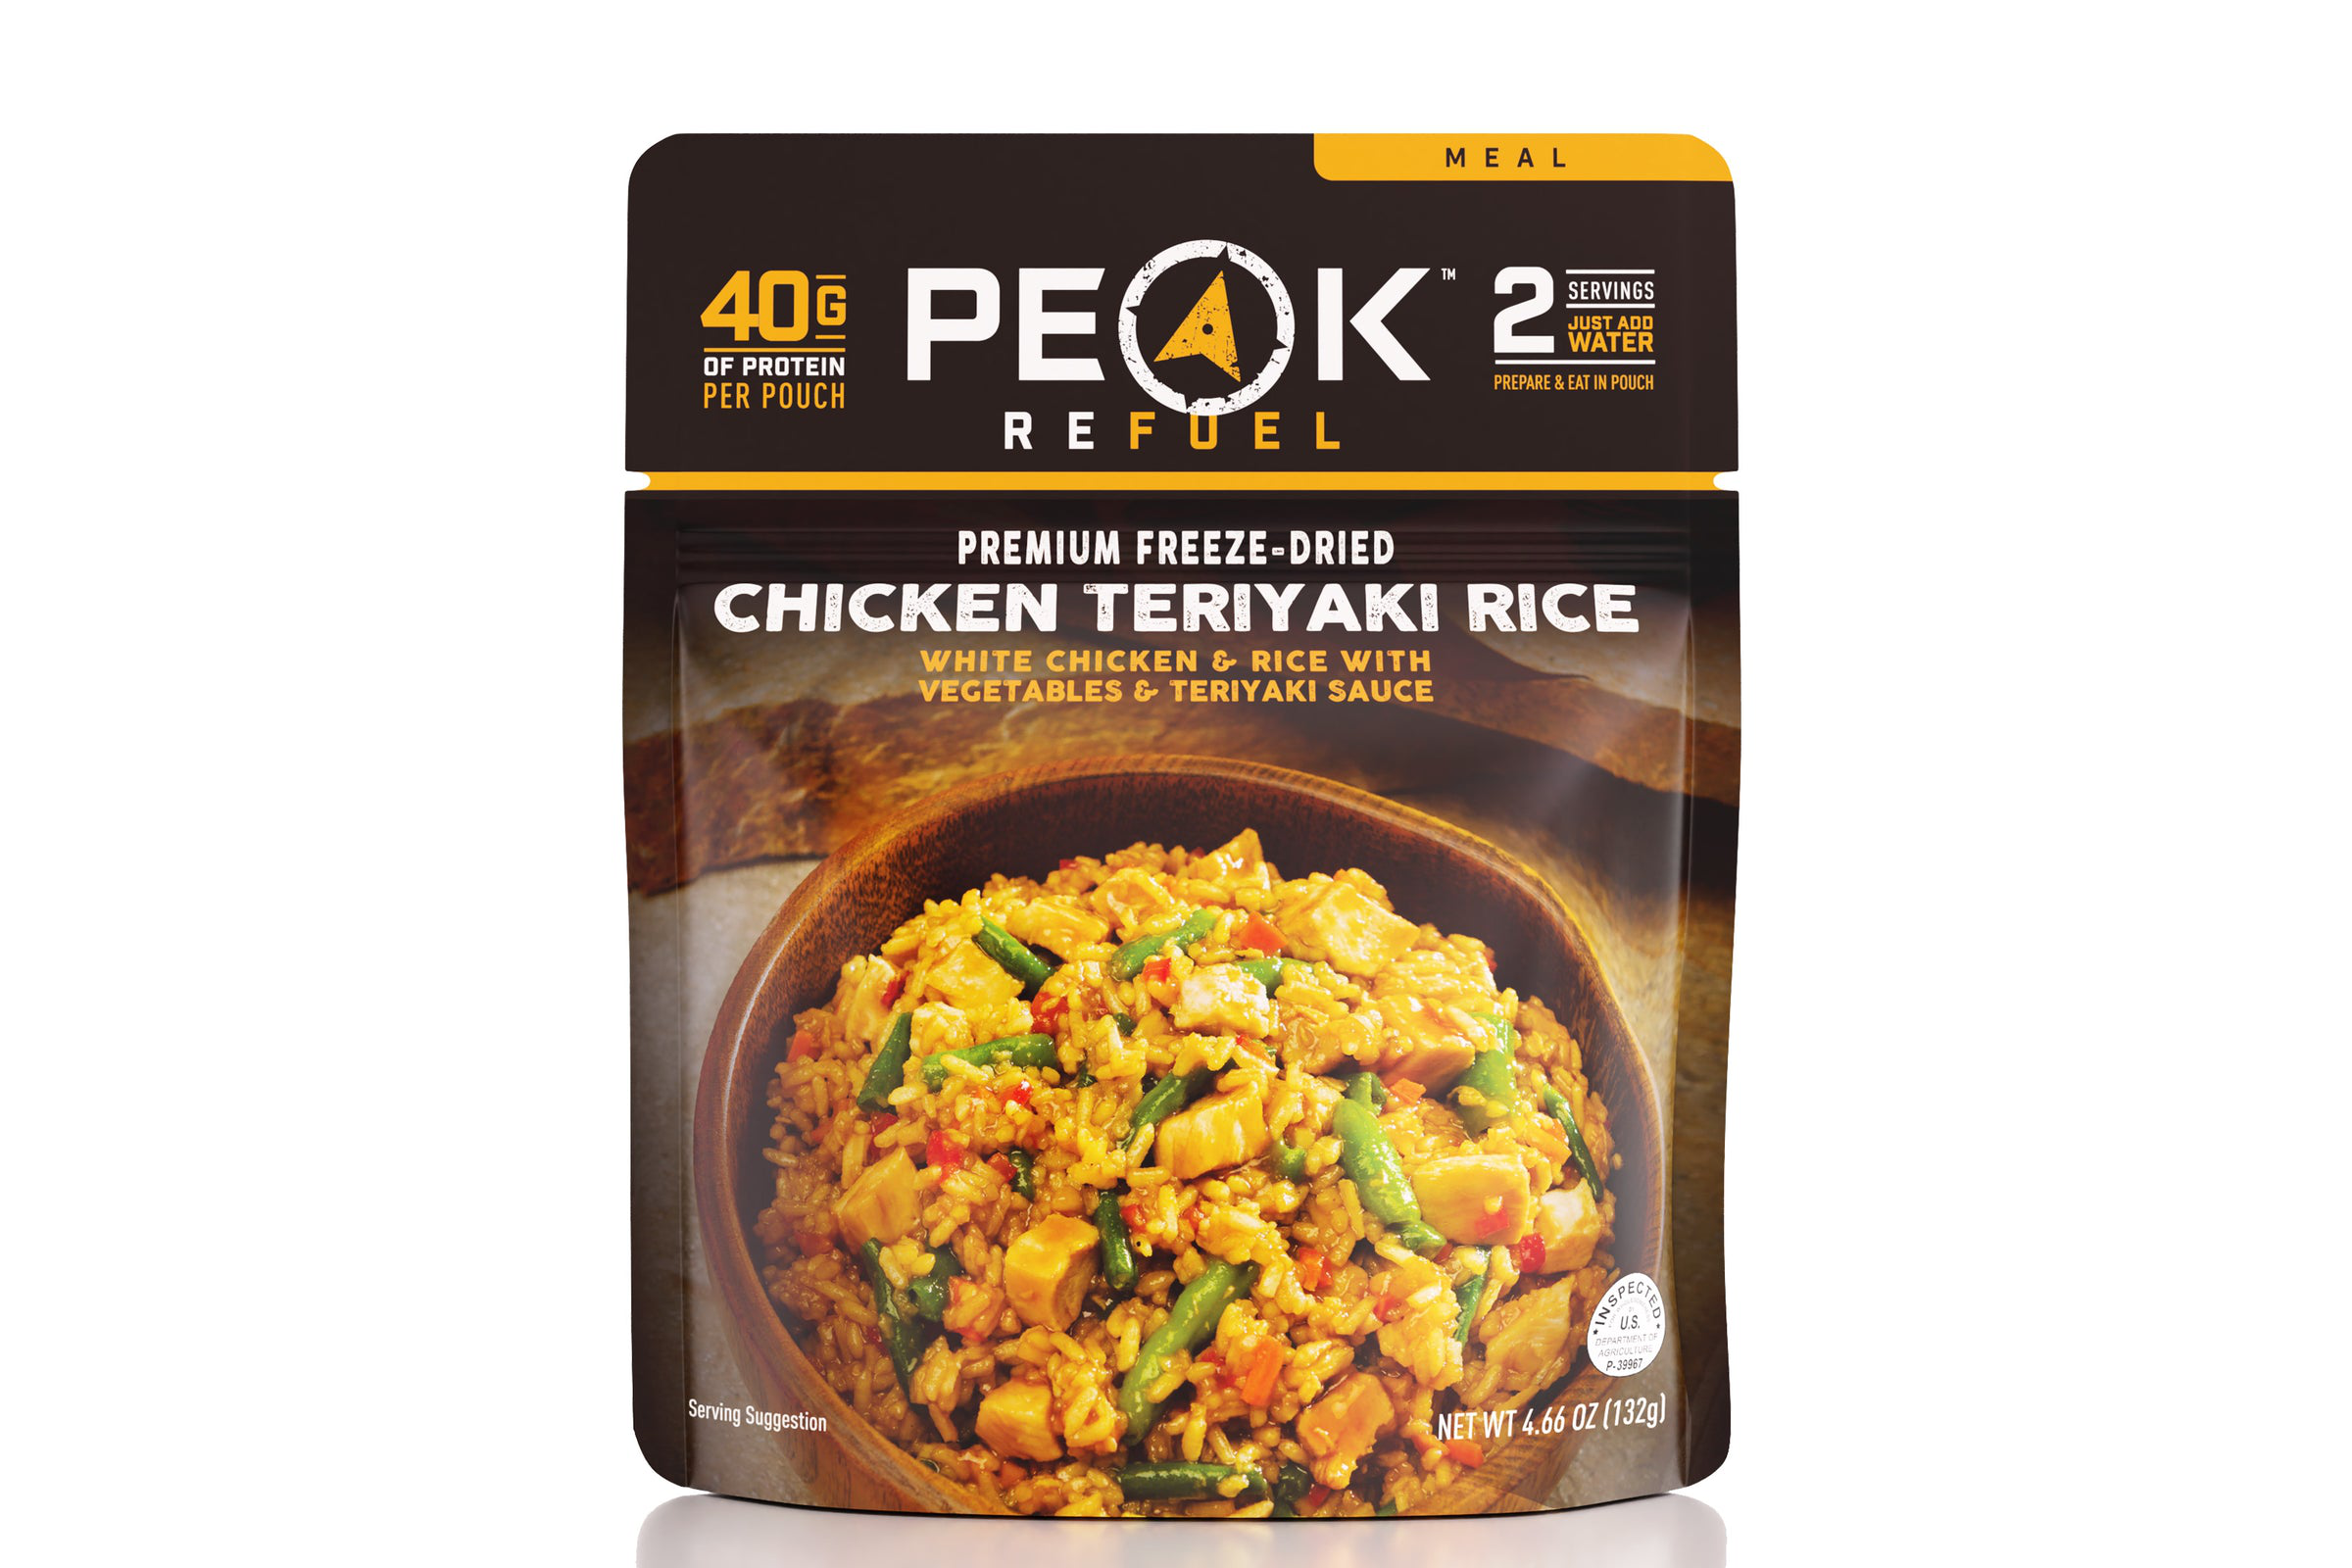 Peak Refuel Chicken Teriyaki Rice 2 Serving Pouch